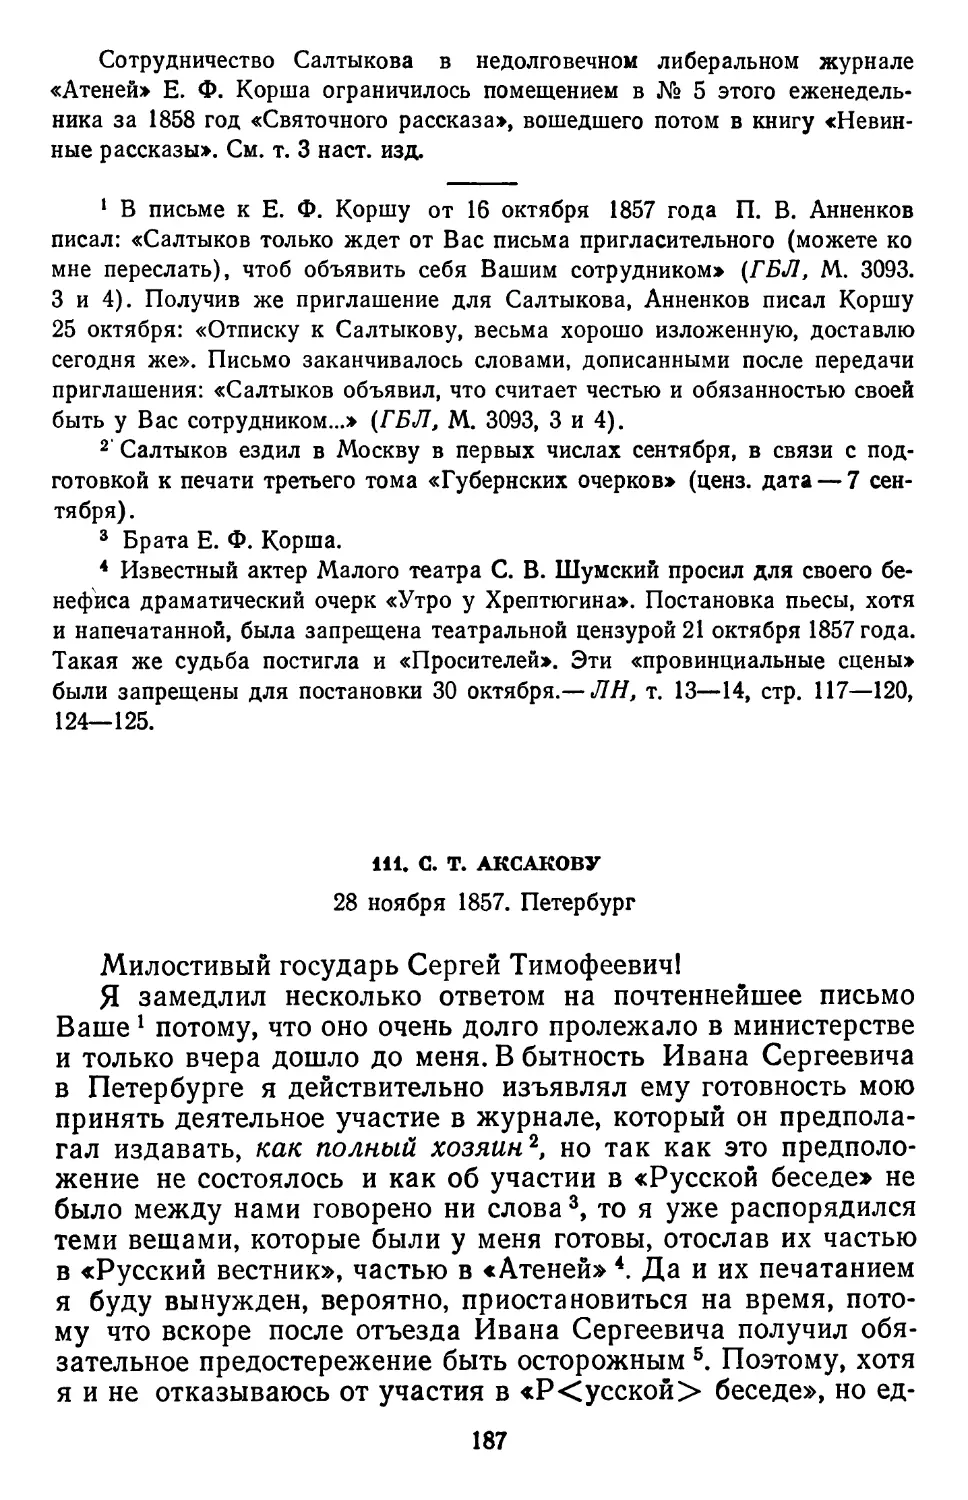 111.С.Т. Аксакову. 28 ноября 1857. Петербург